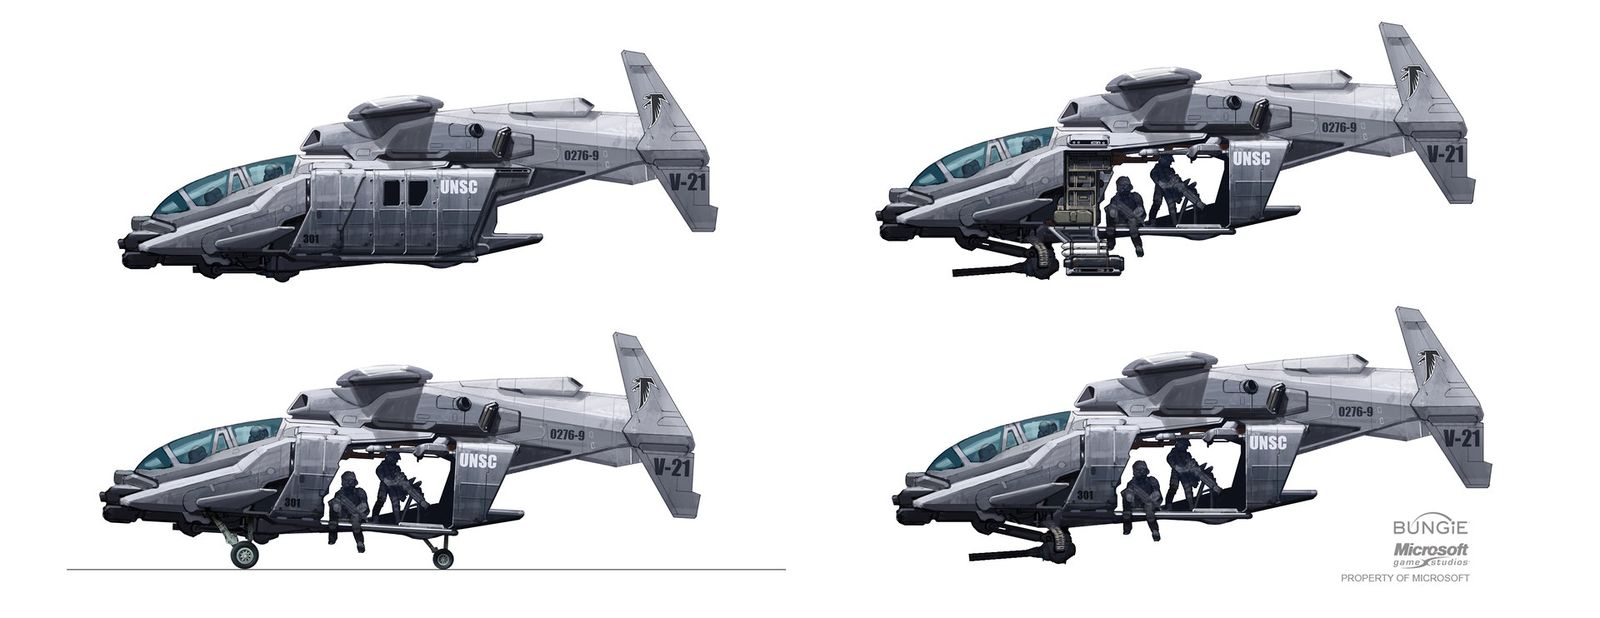 【PC游戏】HALO中的那些载具 —— UH-144猎鹰号通用直升机-第16张